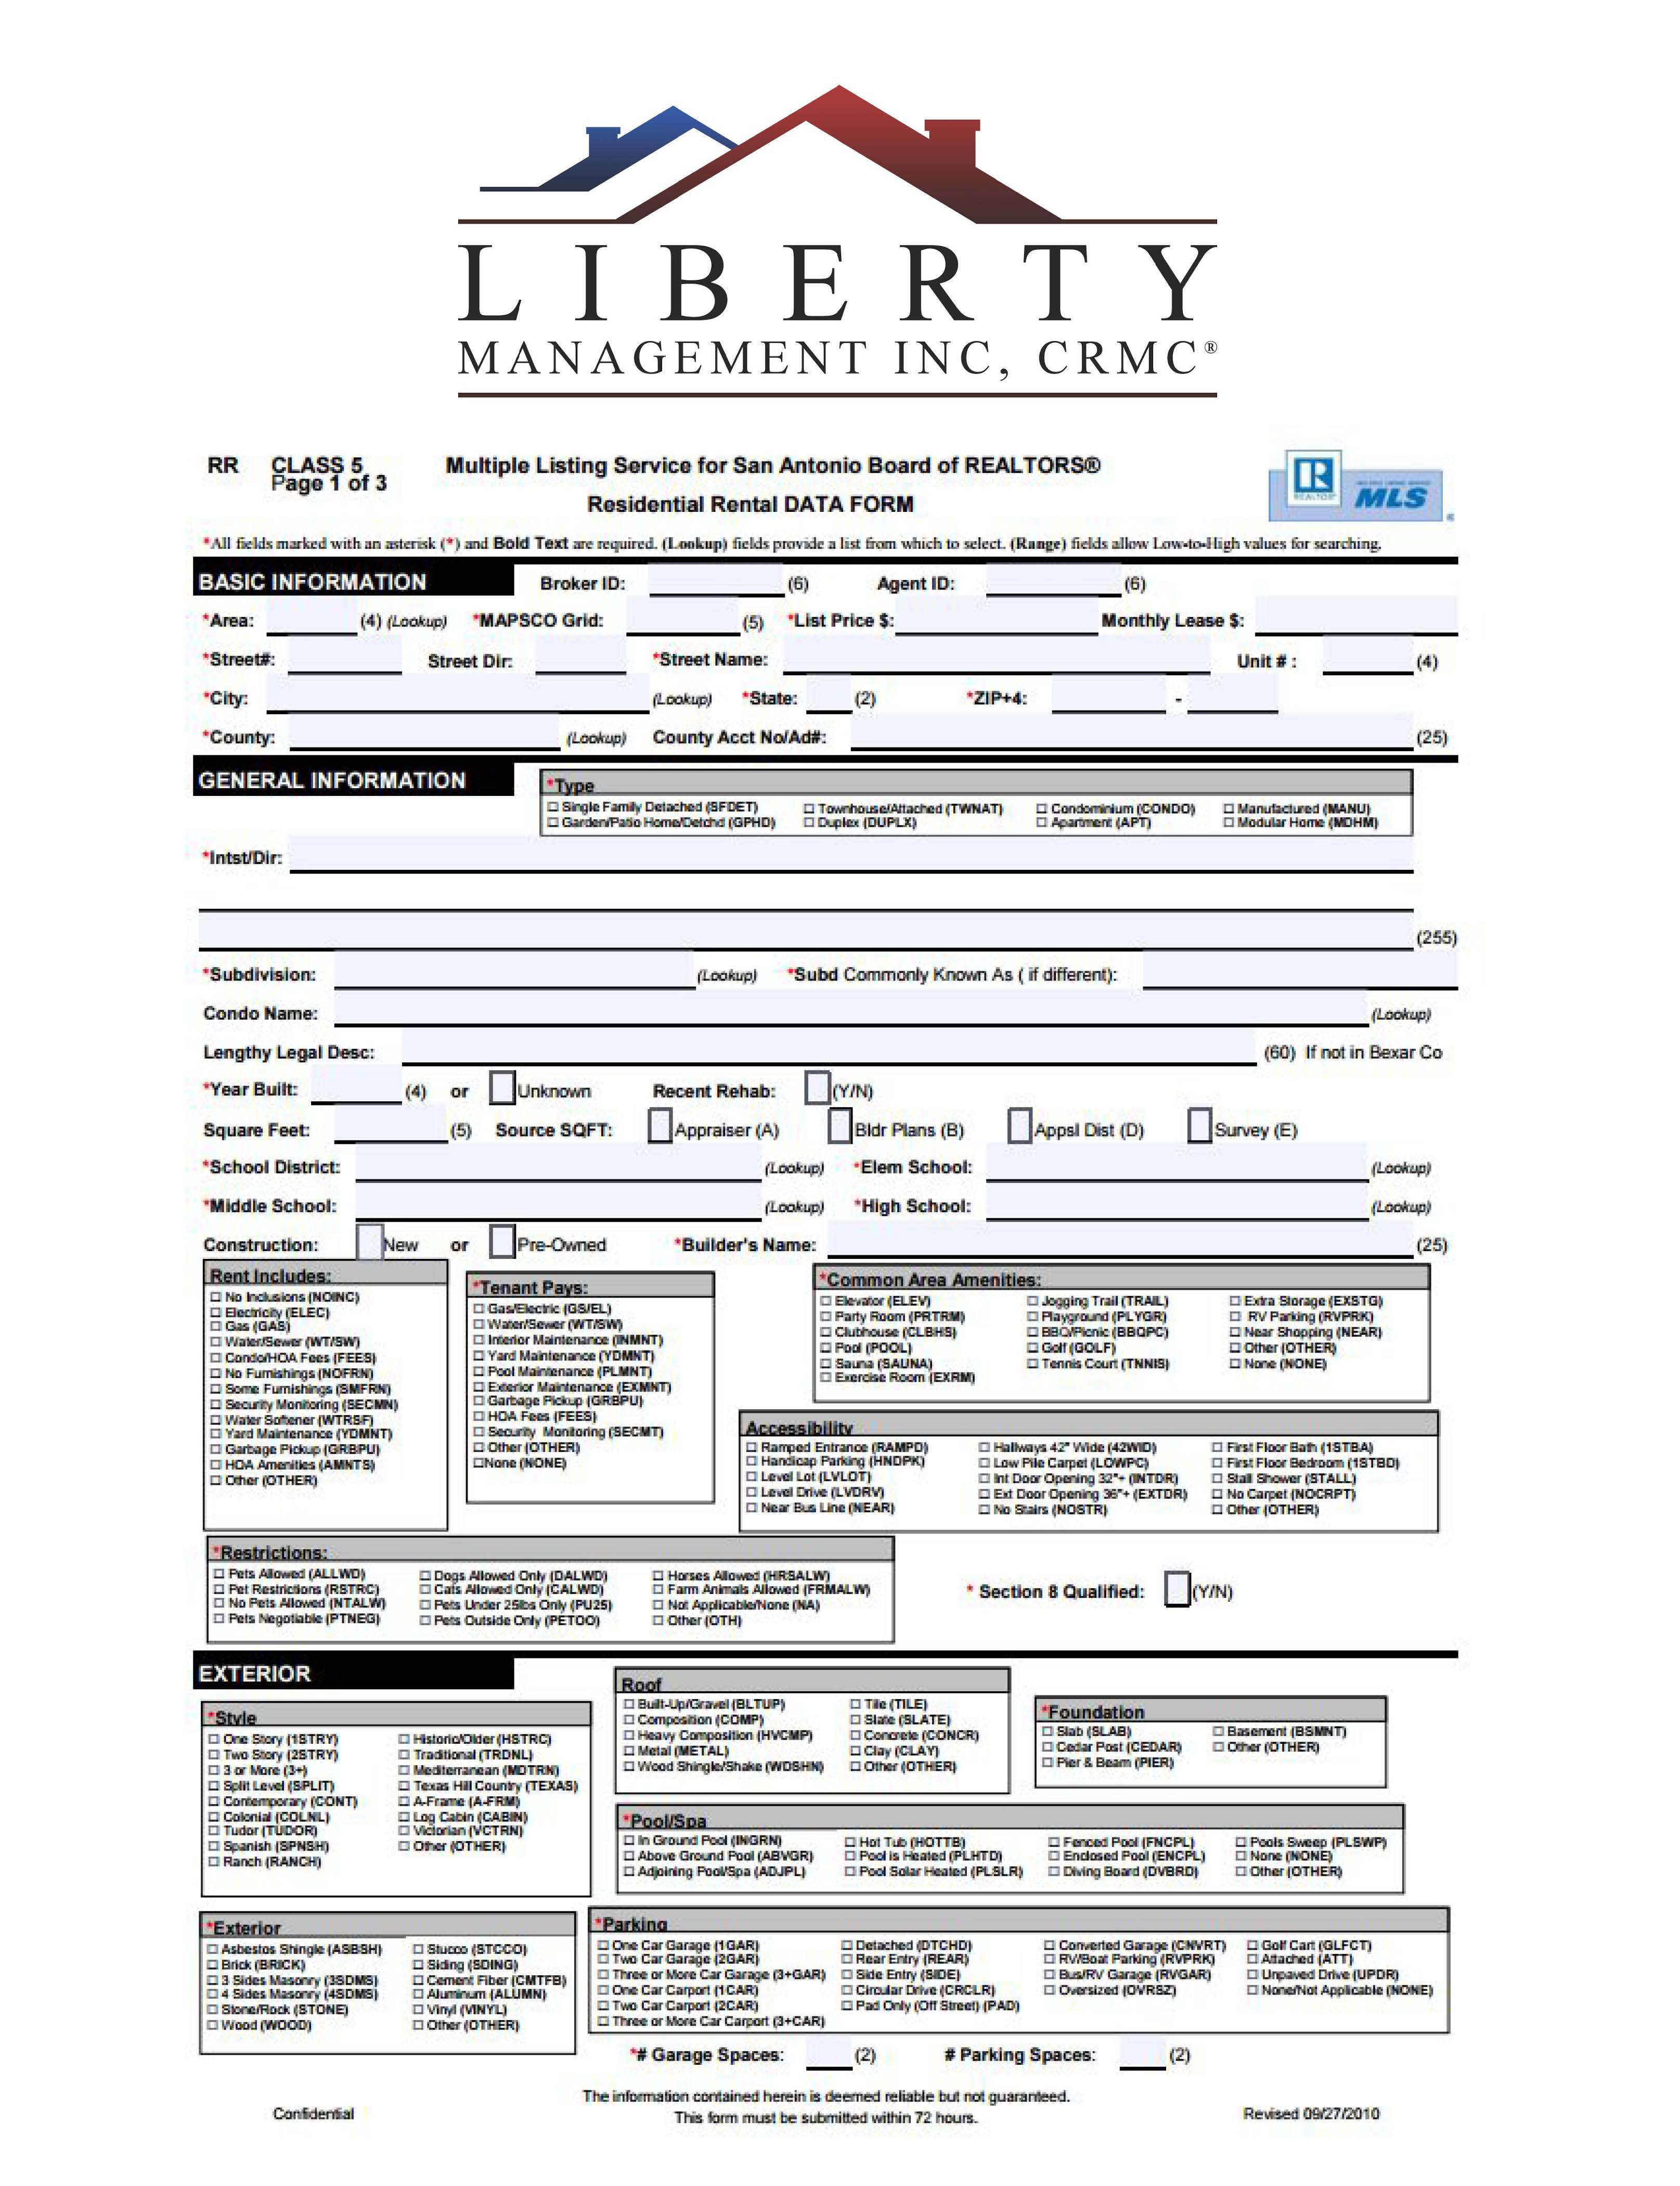 MLS Rental Profile Sheet